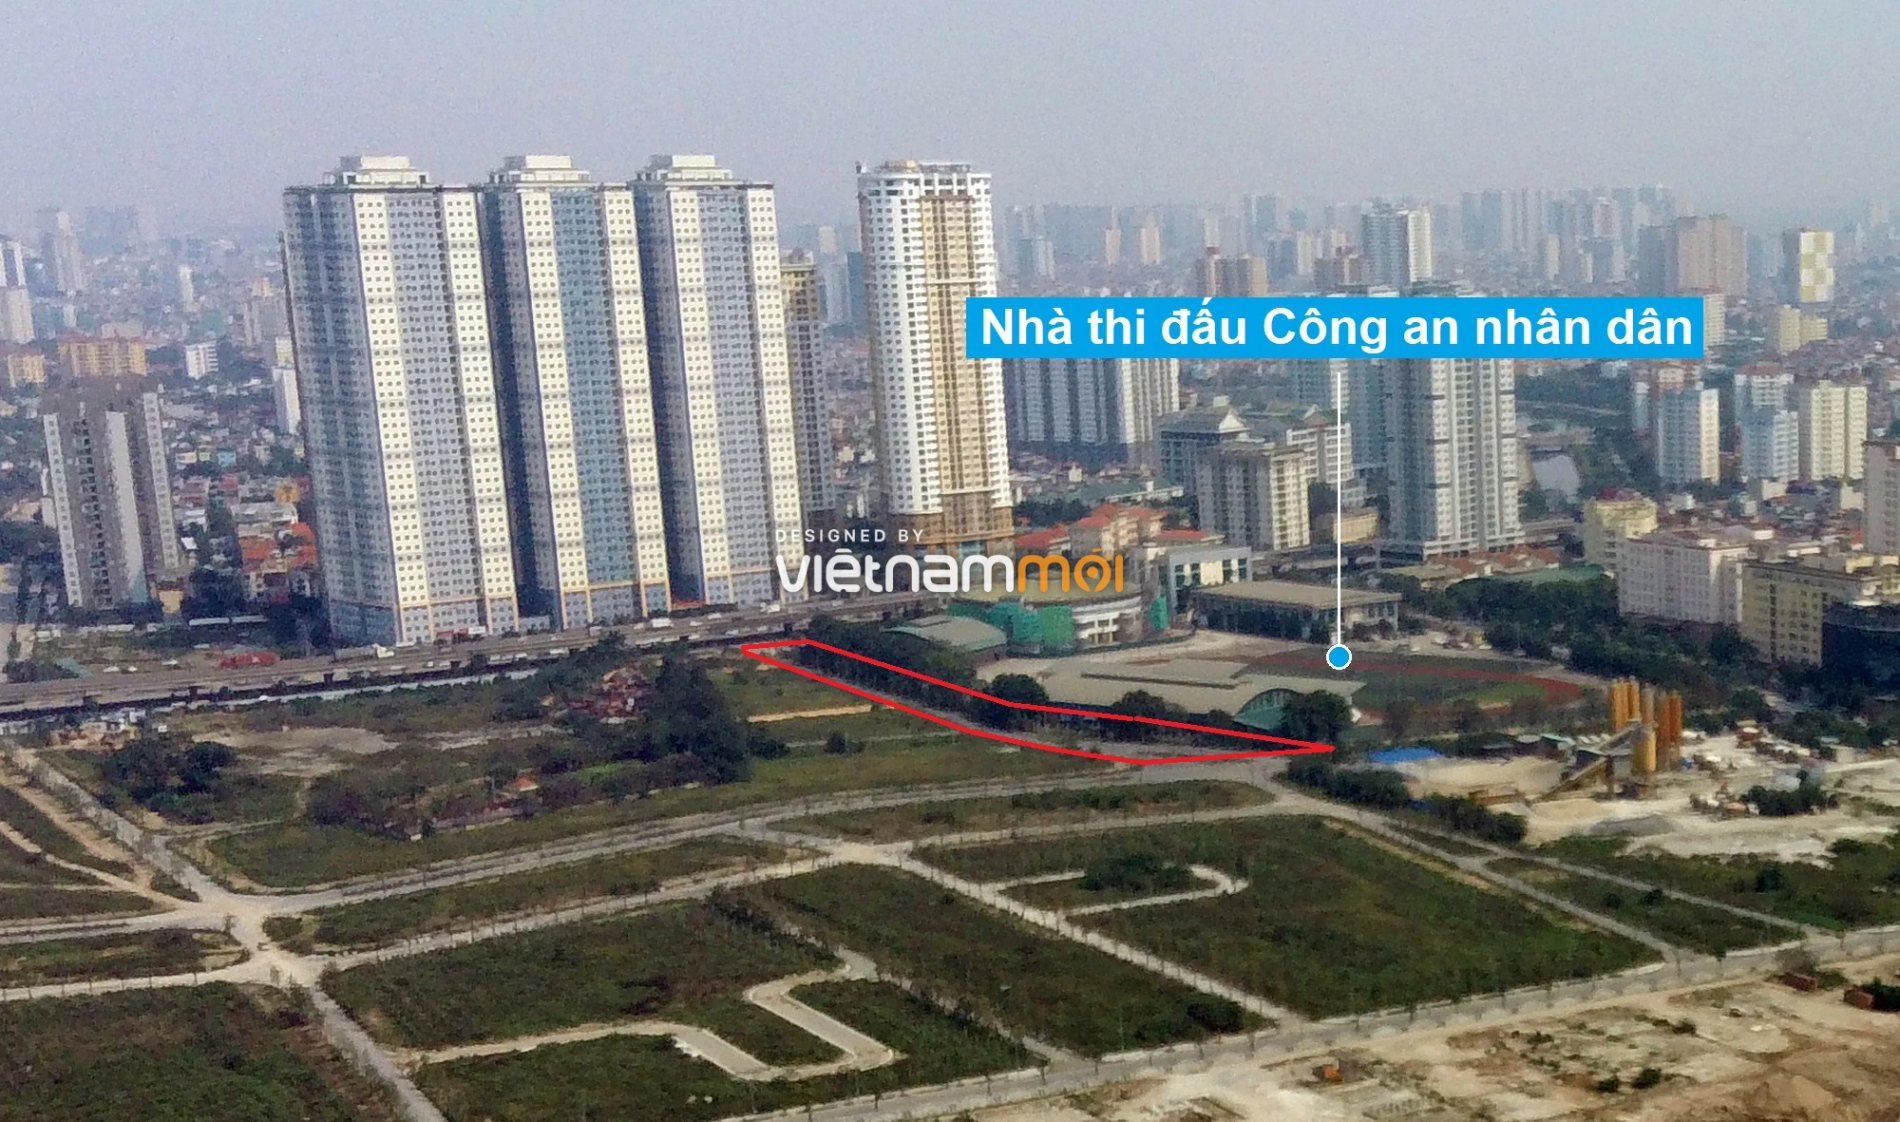 Những khu đất sắp thu hồi để mở đường ở xã Thanh Liệt, Thanh Trì, Hà Nội (phần 3) - Ảnh 11.